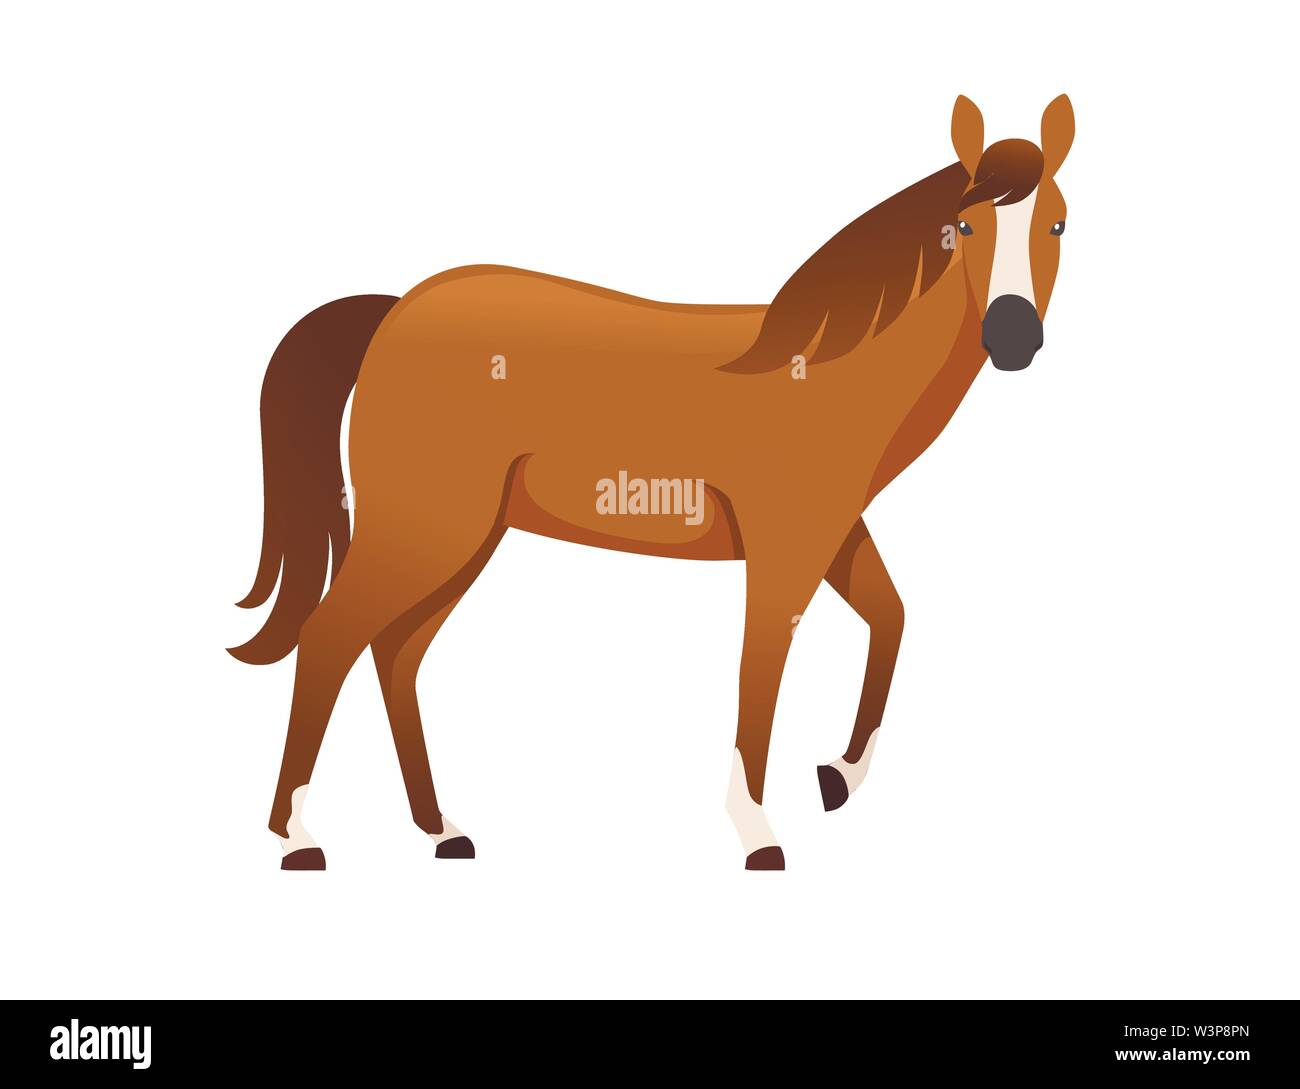 Brown horse animal sauvage ou domestique télévision design cartoon vector illustration isolé sur fond blanc. Illustration de Vecteur